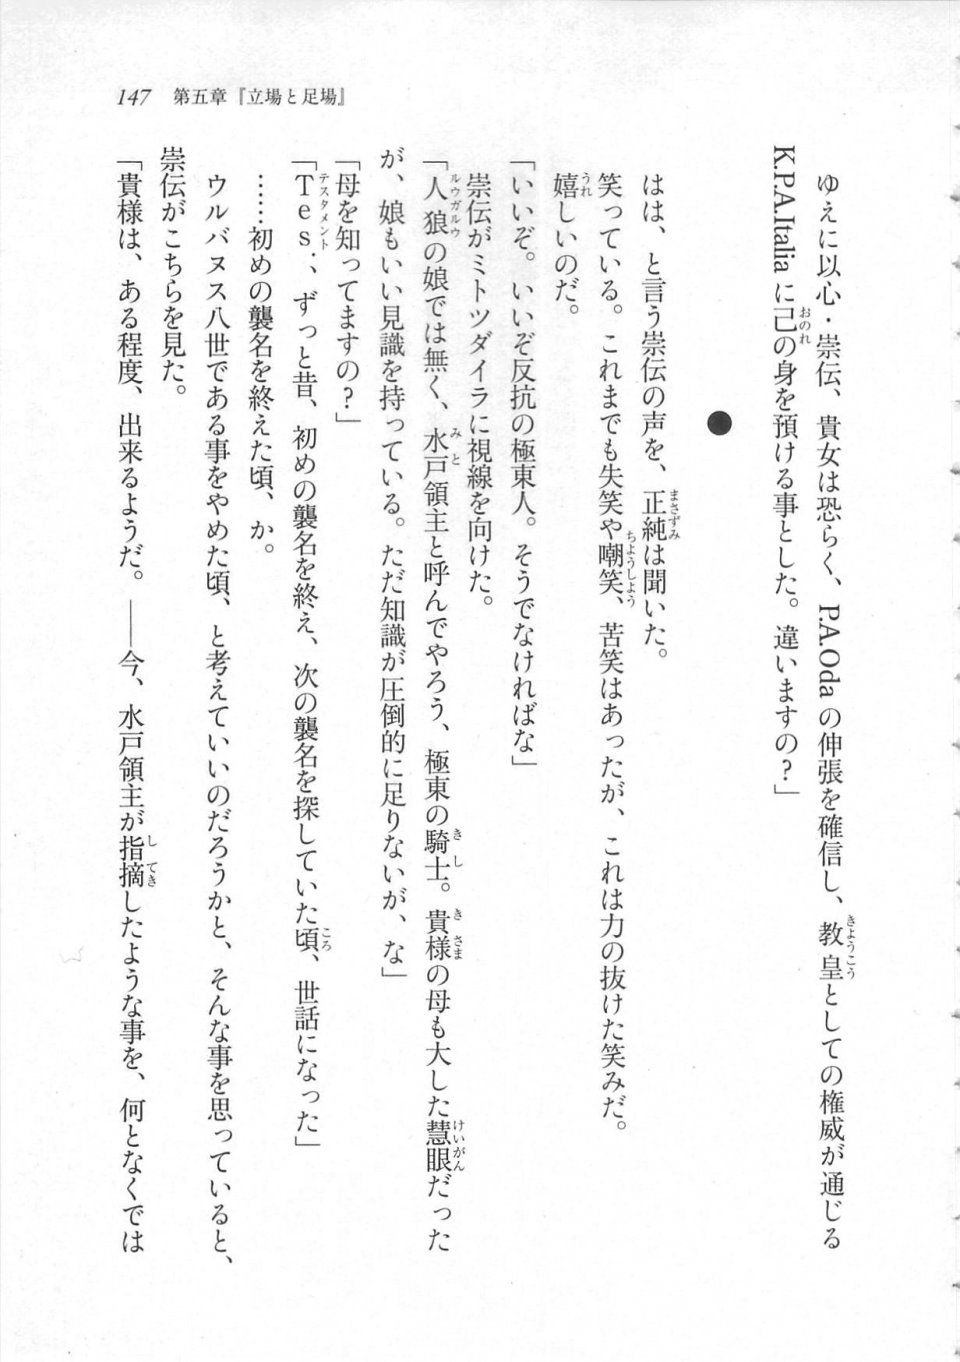 Kyoukai Senjou no Horizon LN Sidestory Vol 3 - Photo #151